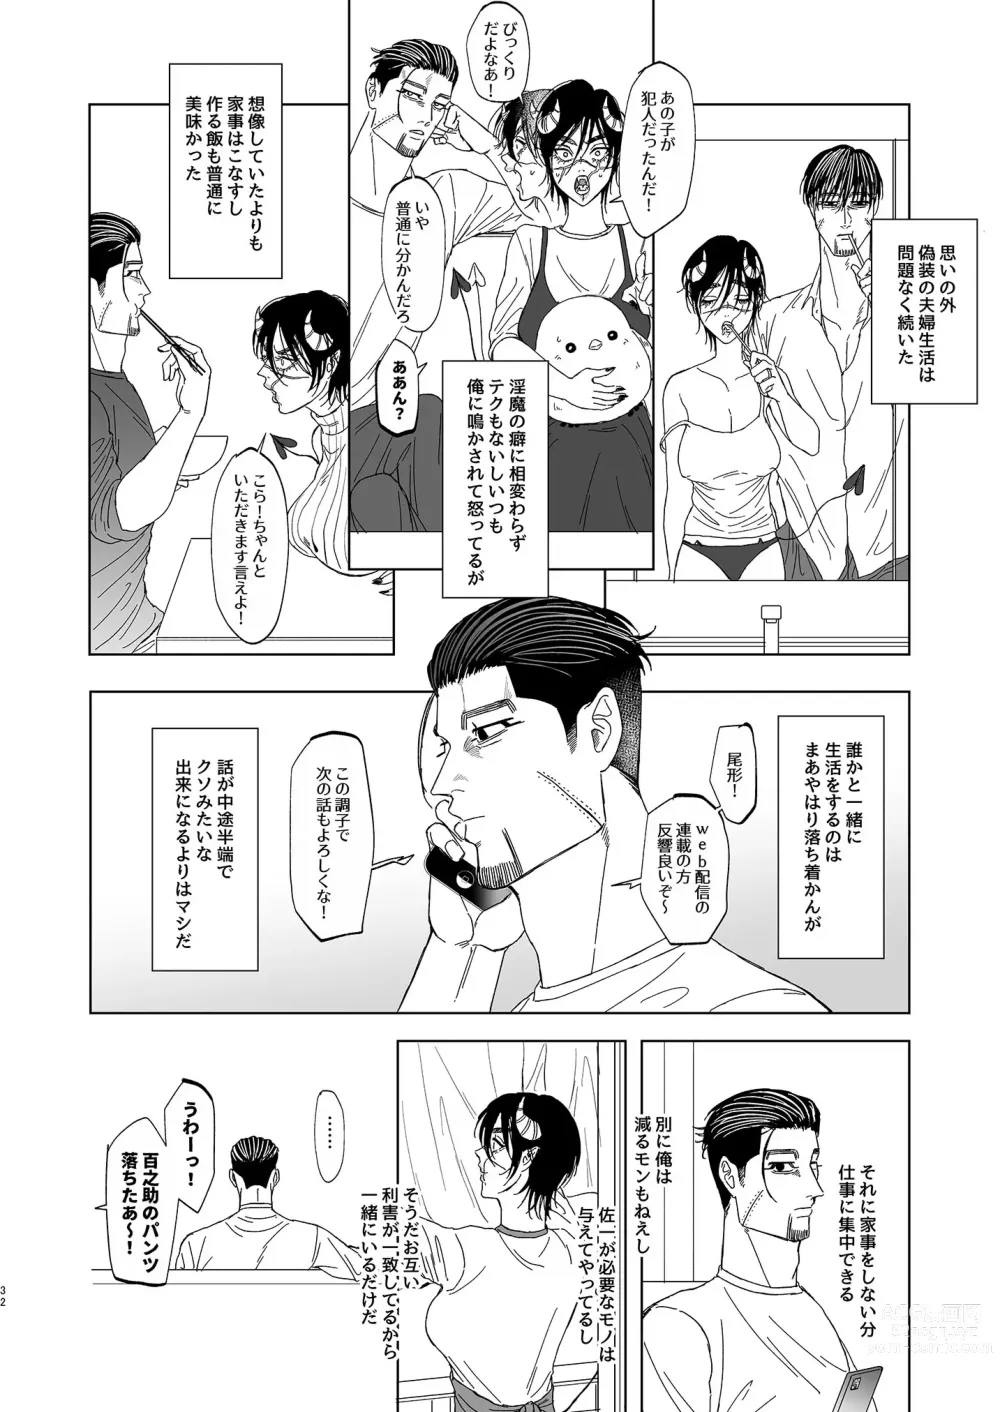 Page 31 of doujinshi Ogata Hyakunosuke no Gisou Kekkon